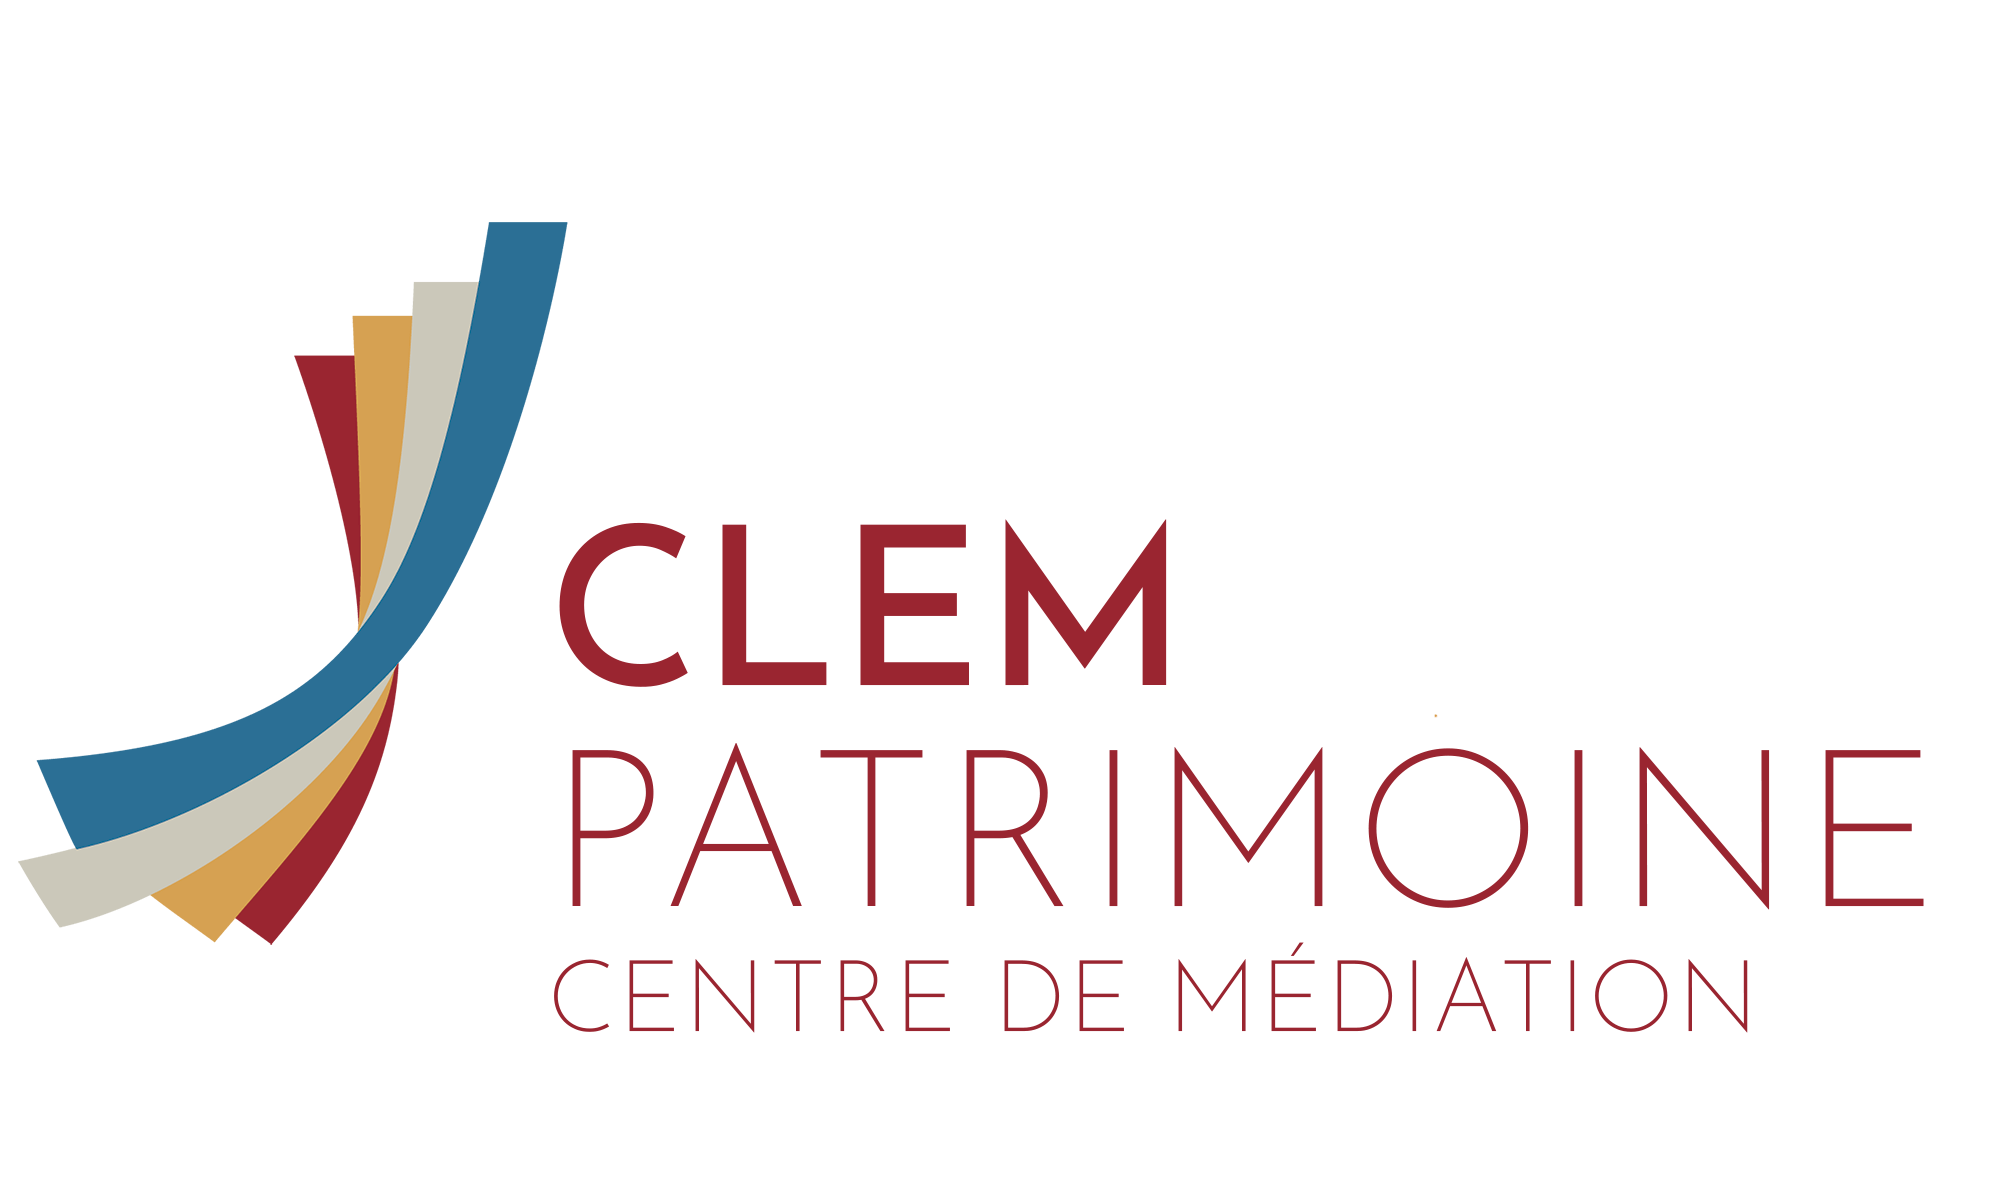 CLEM Patrimoine